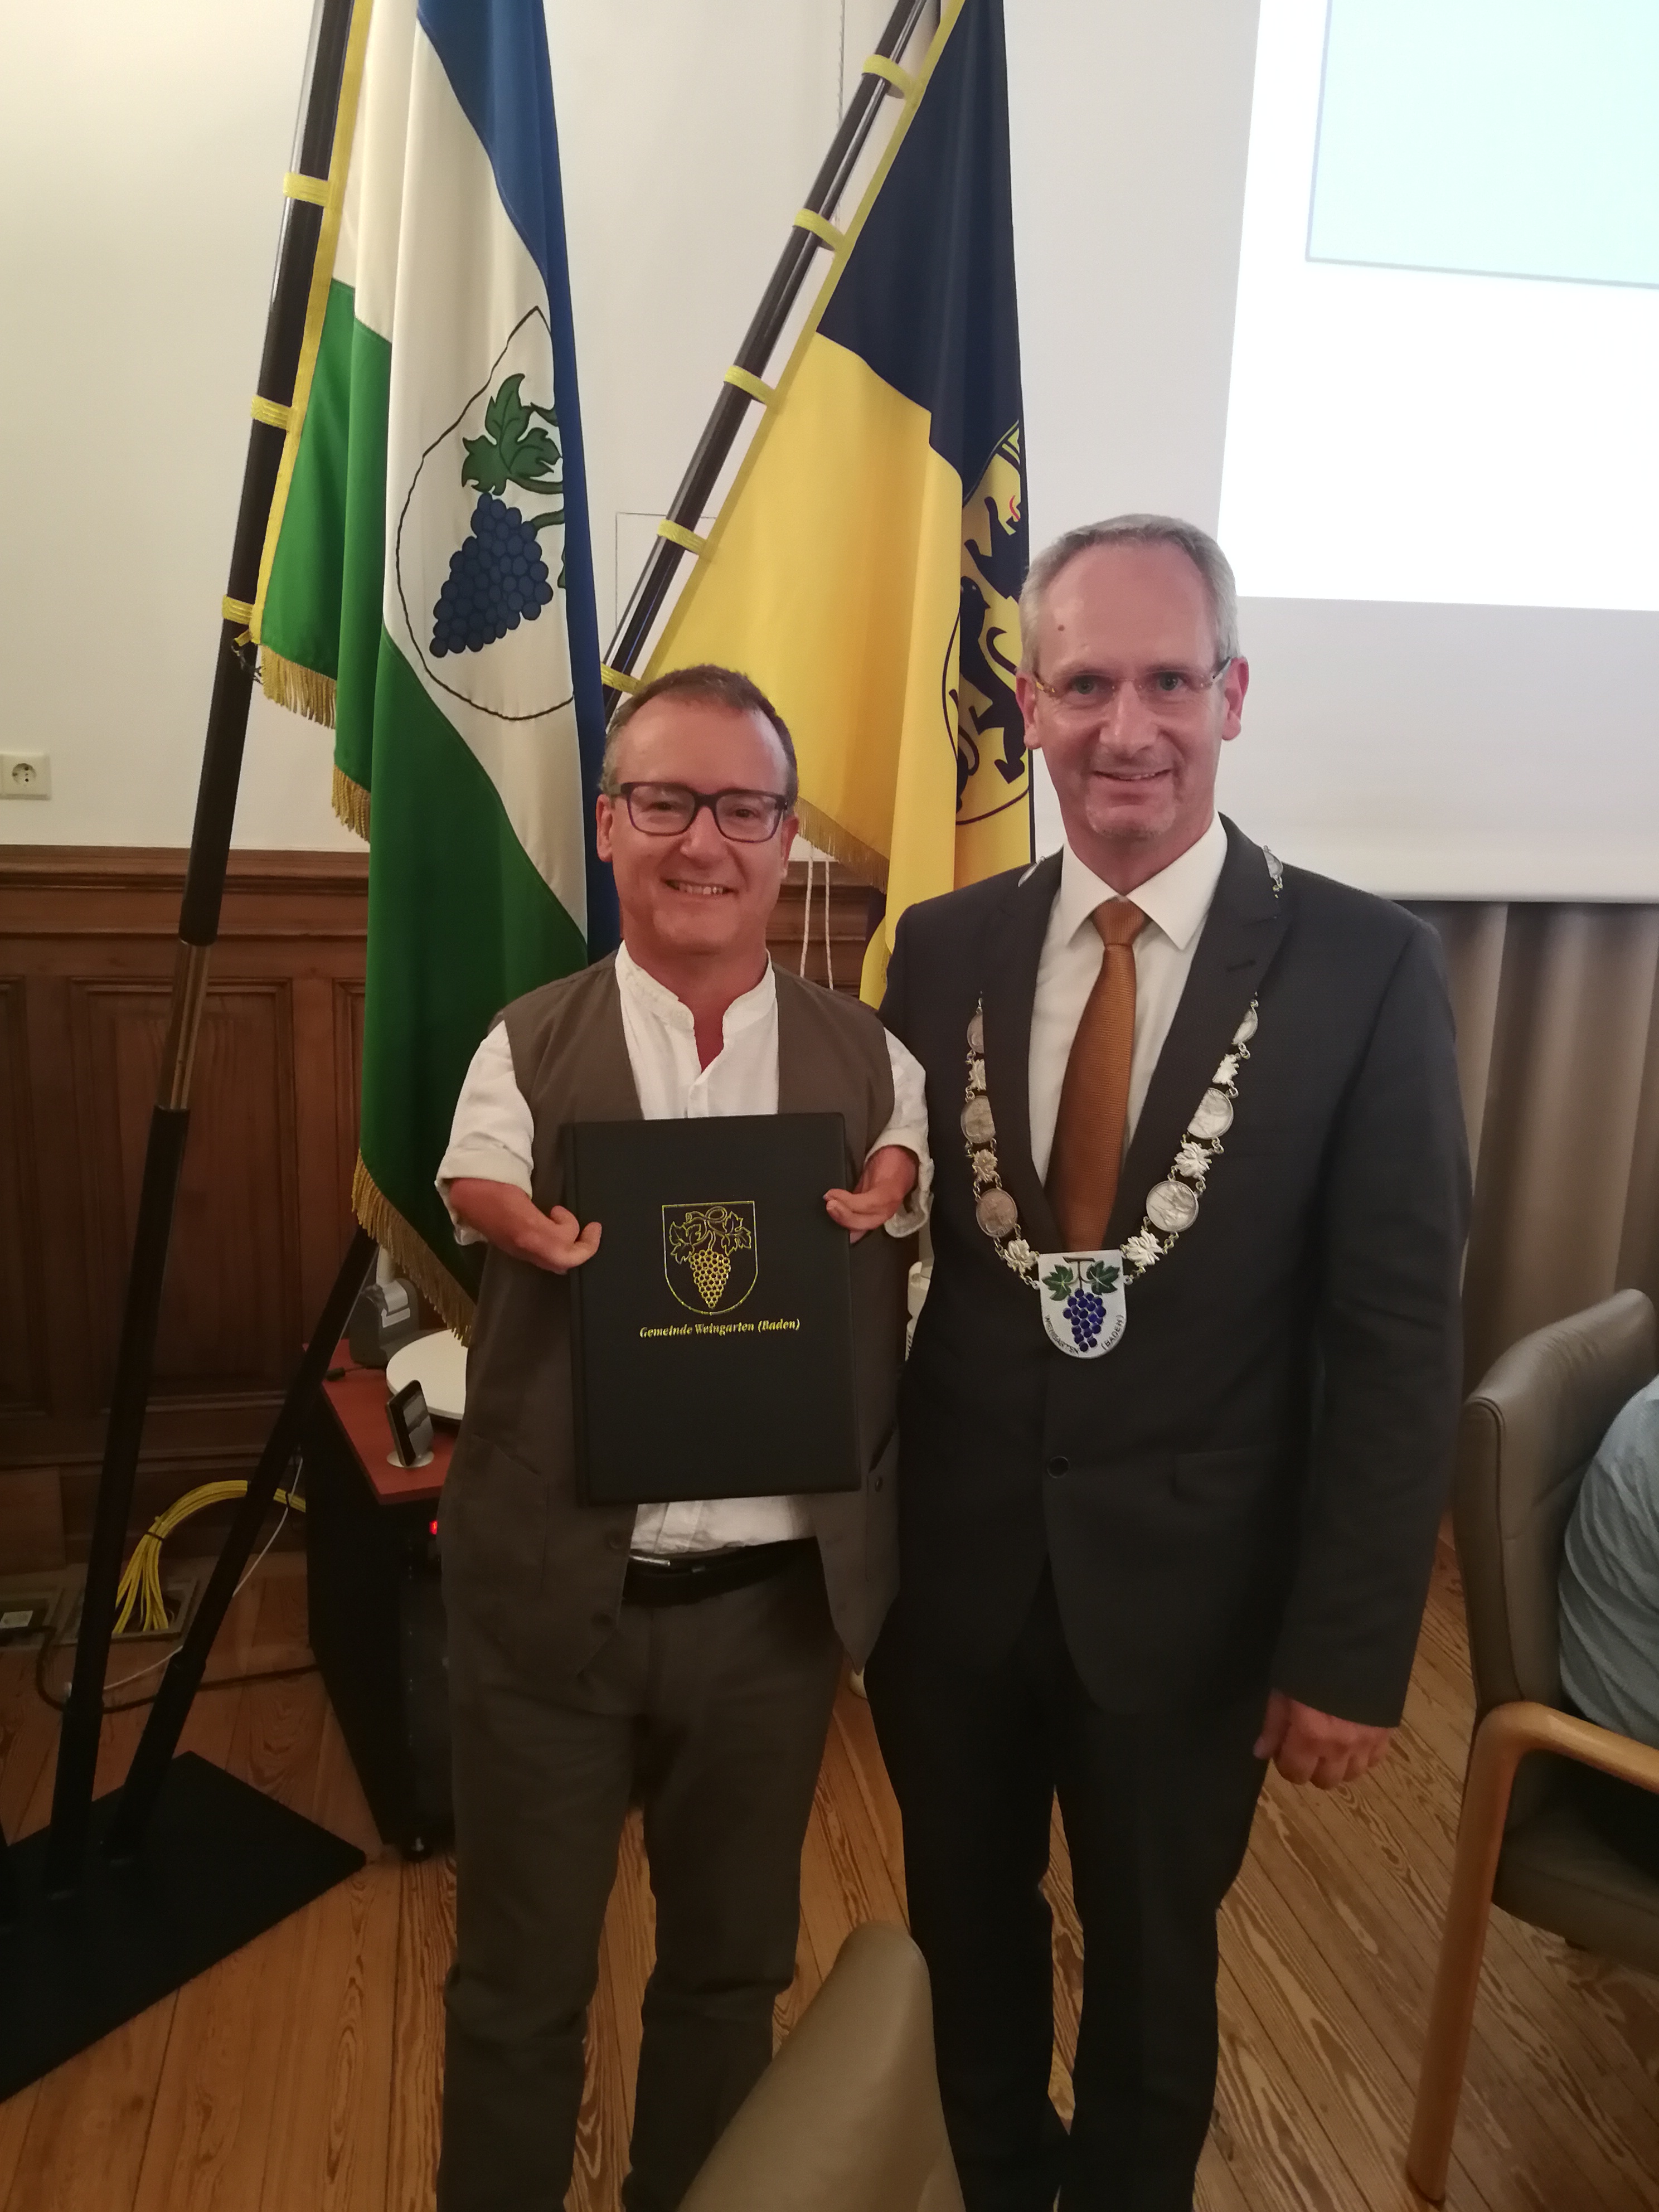 Jörk Kreuzinger wird von Bürgermeister Bänziger als Gemeinderat vereidigt